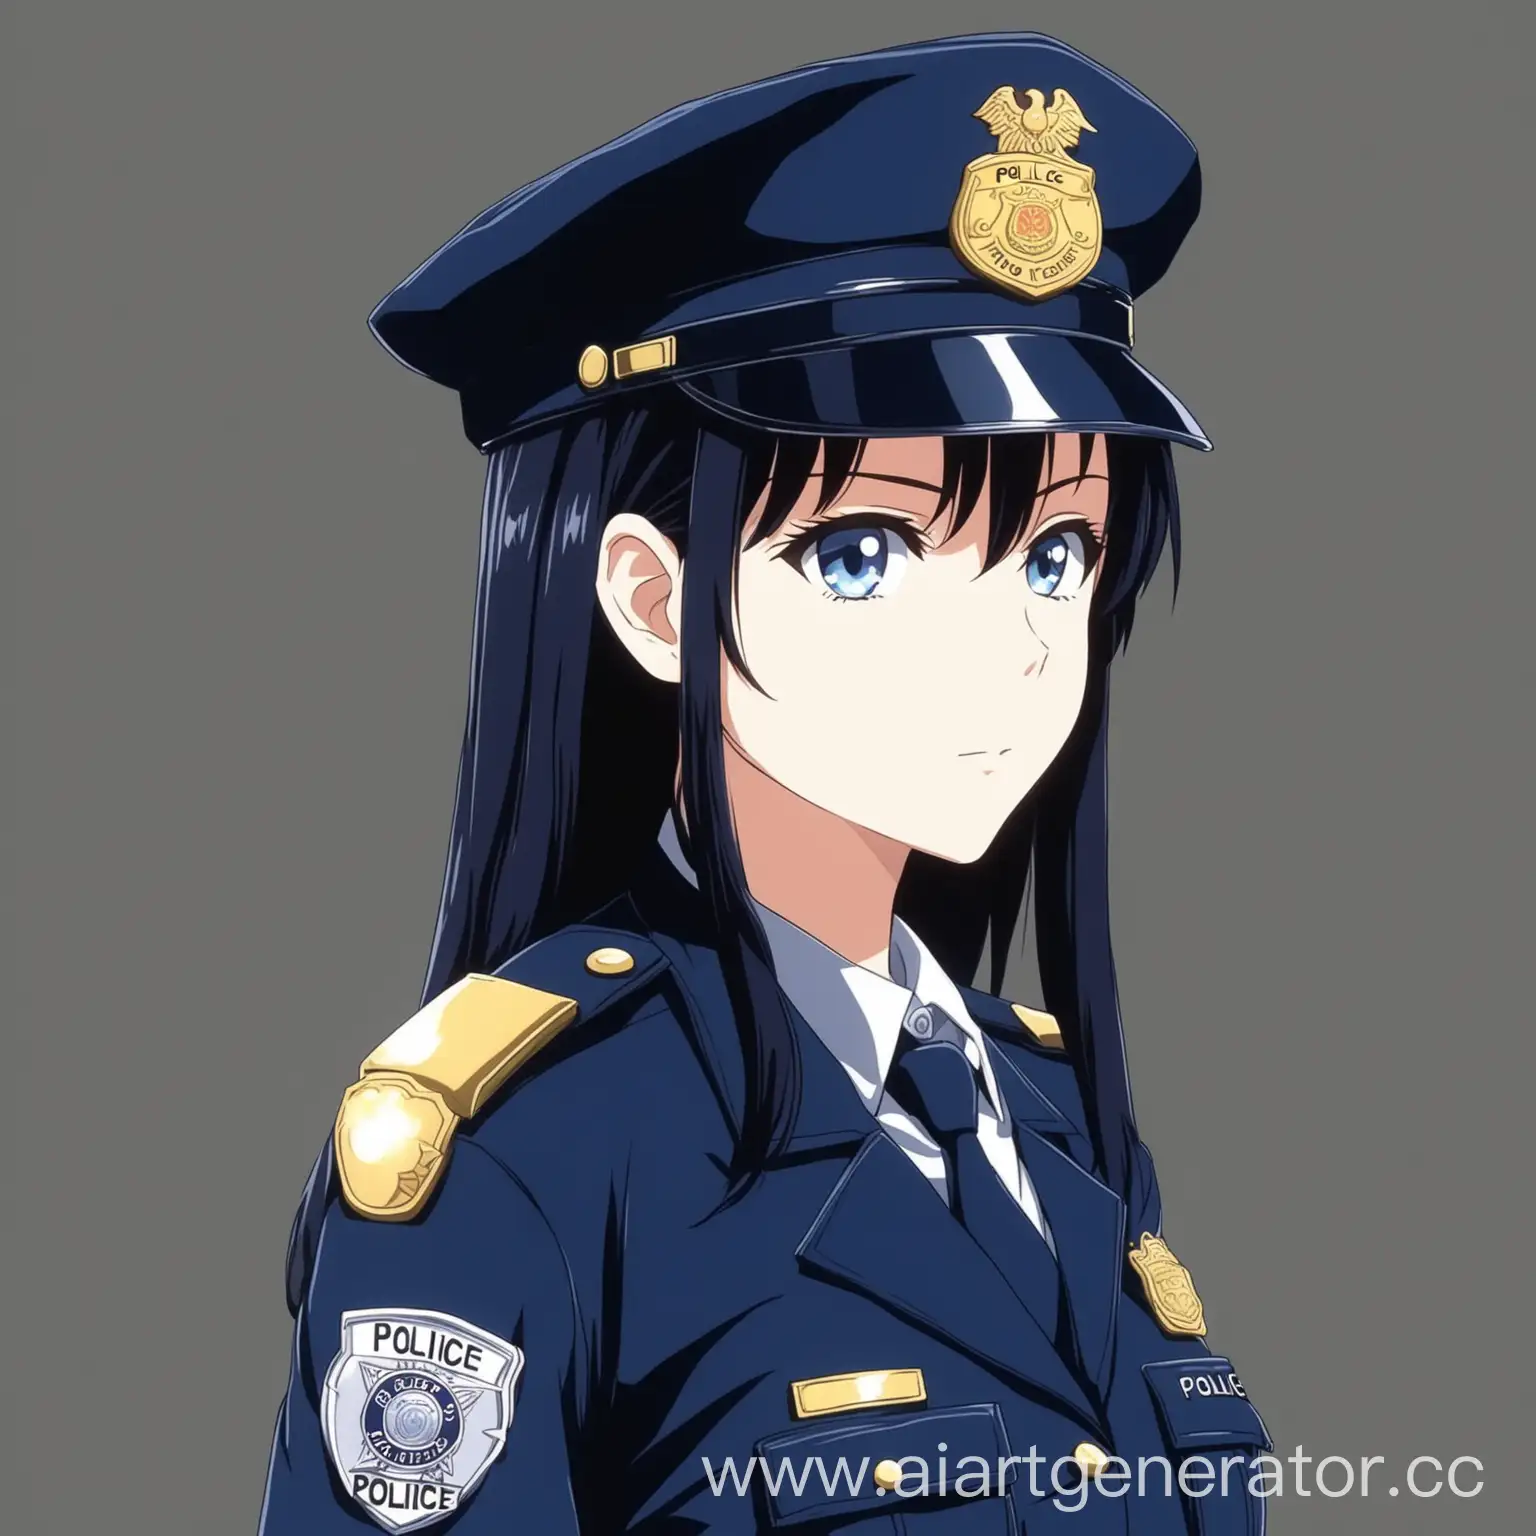 Девушка, 25 лет, светлый цвет кожи, в полицейской форме в стиле аниме